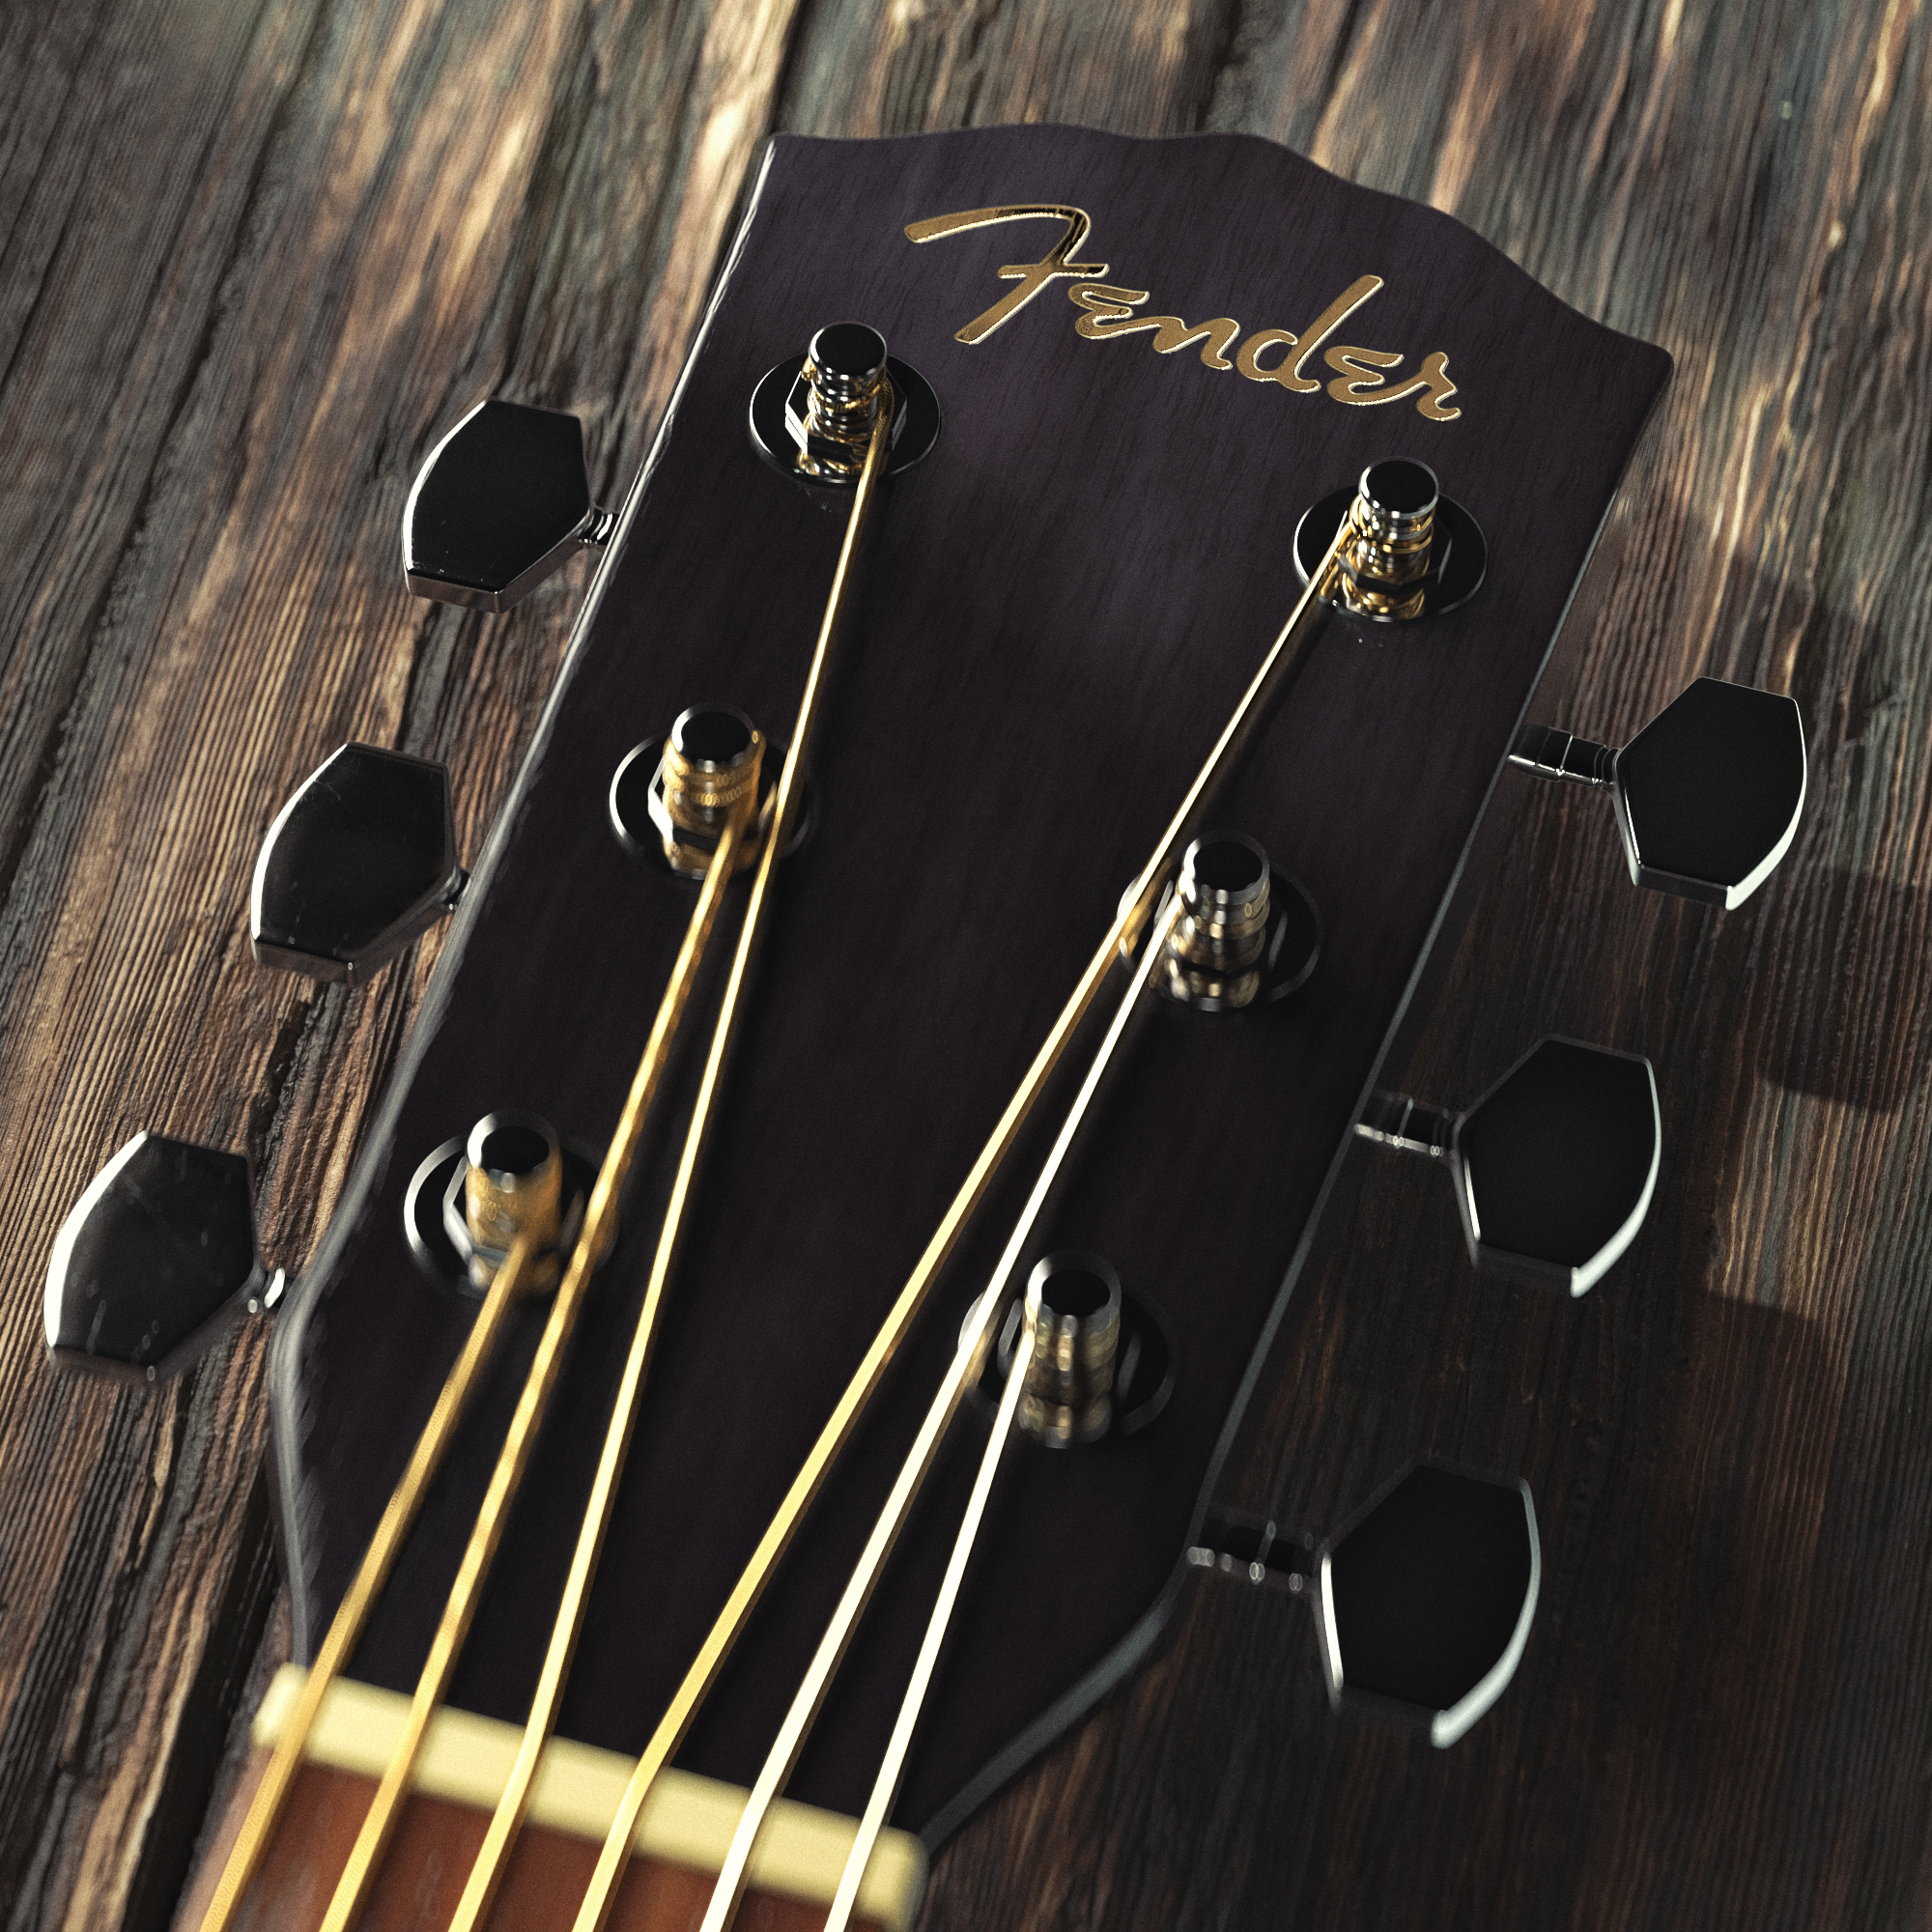 Cratial 3D - Fender Acoustic Guitar - Closeup Shot